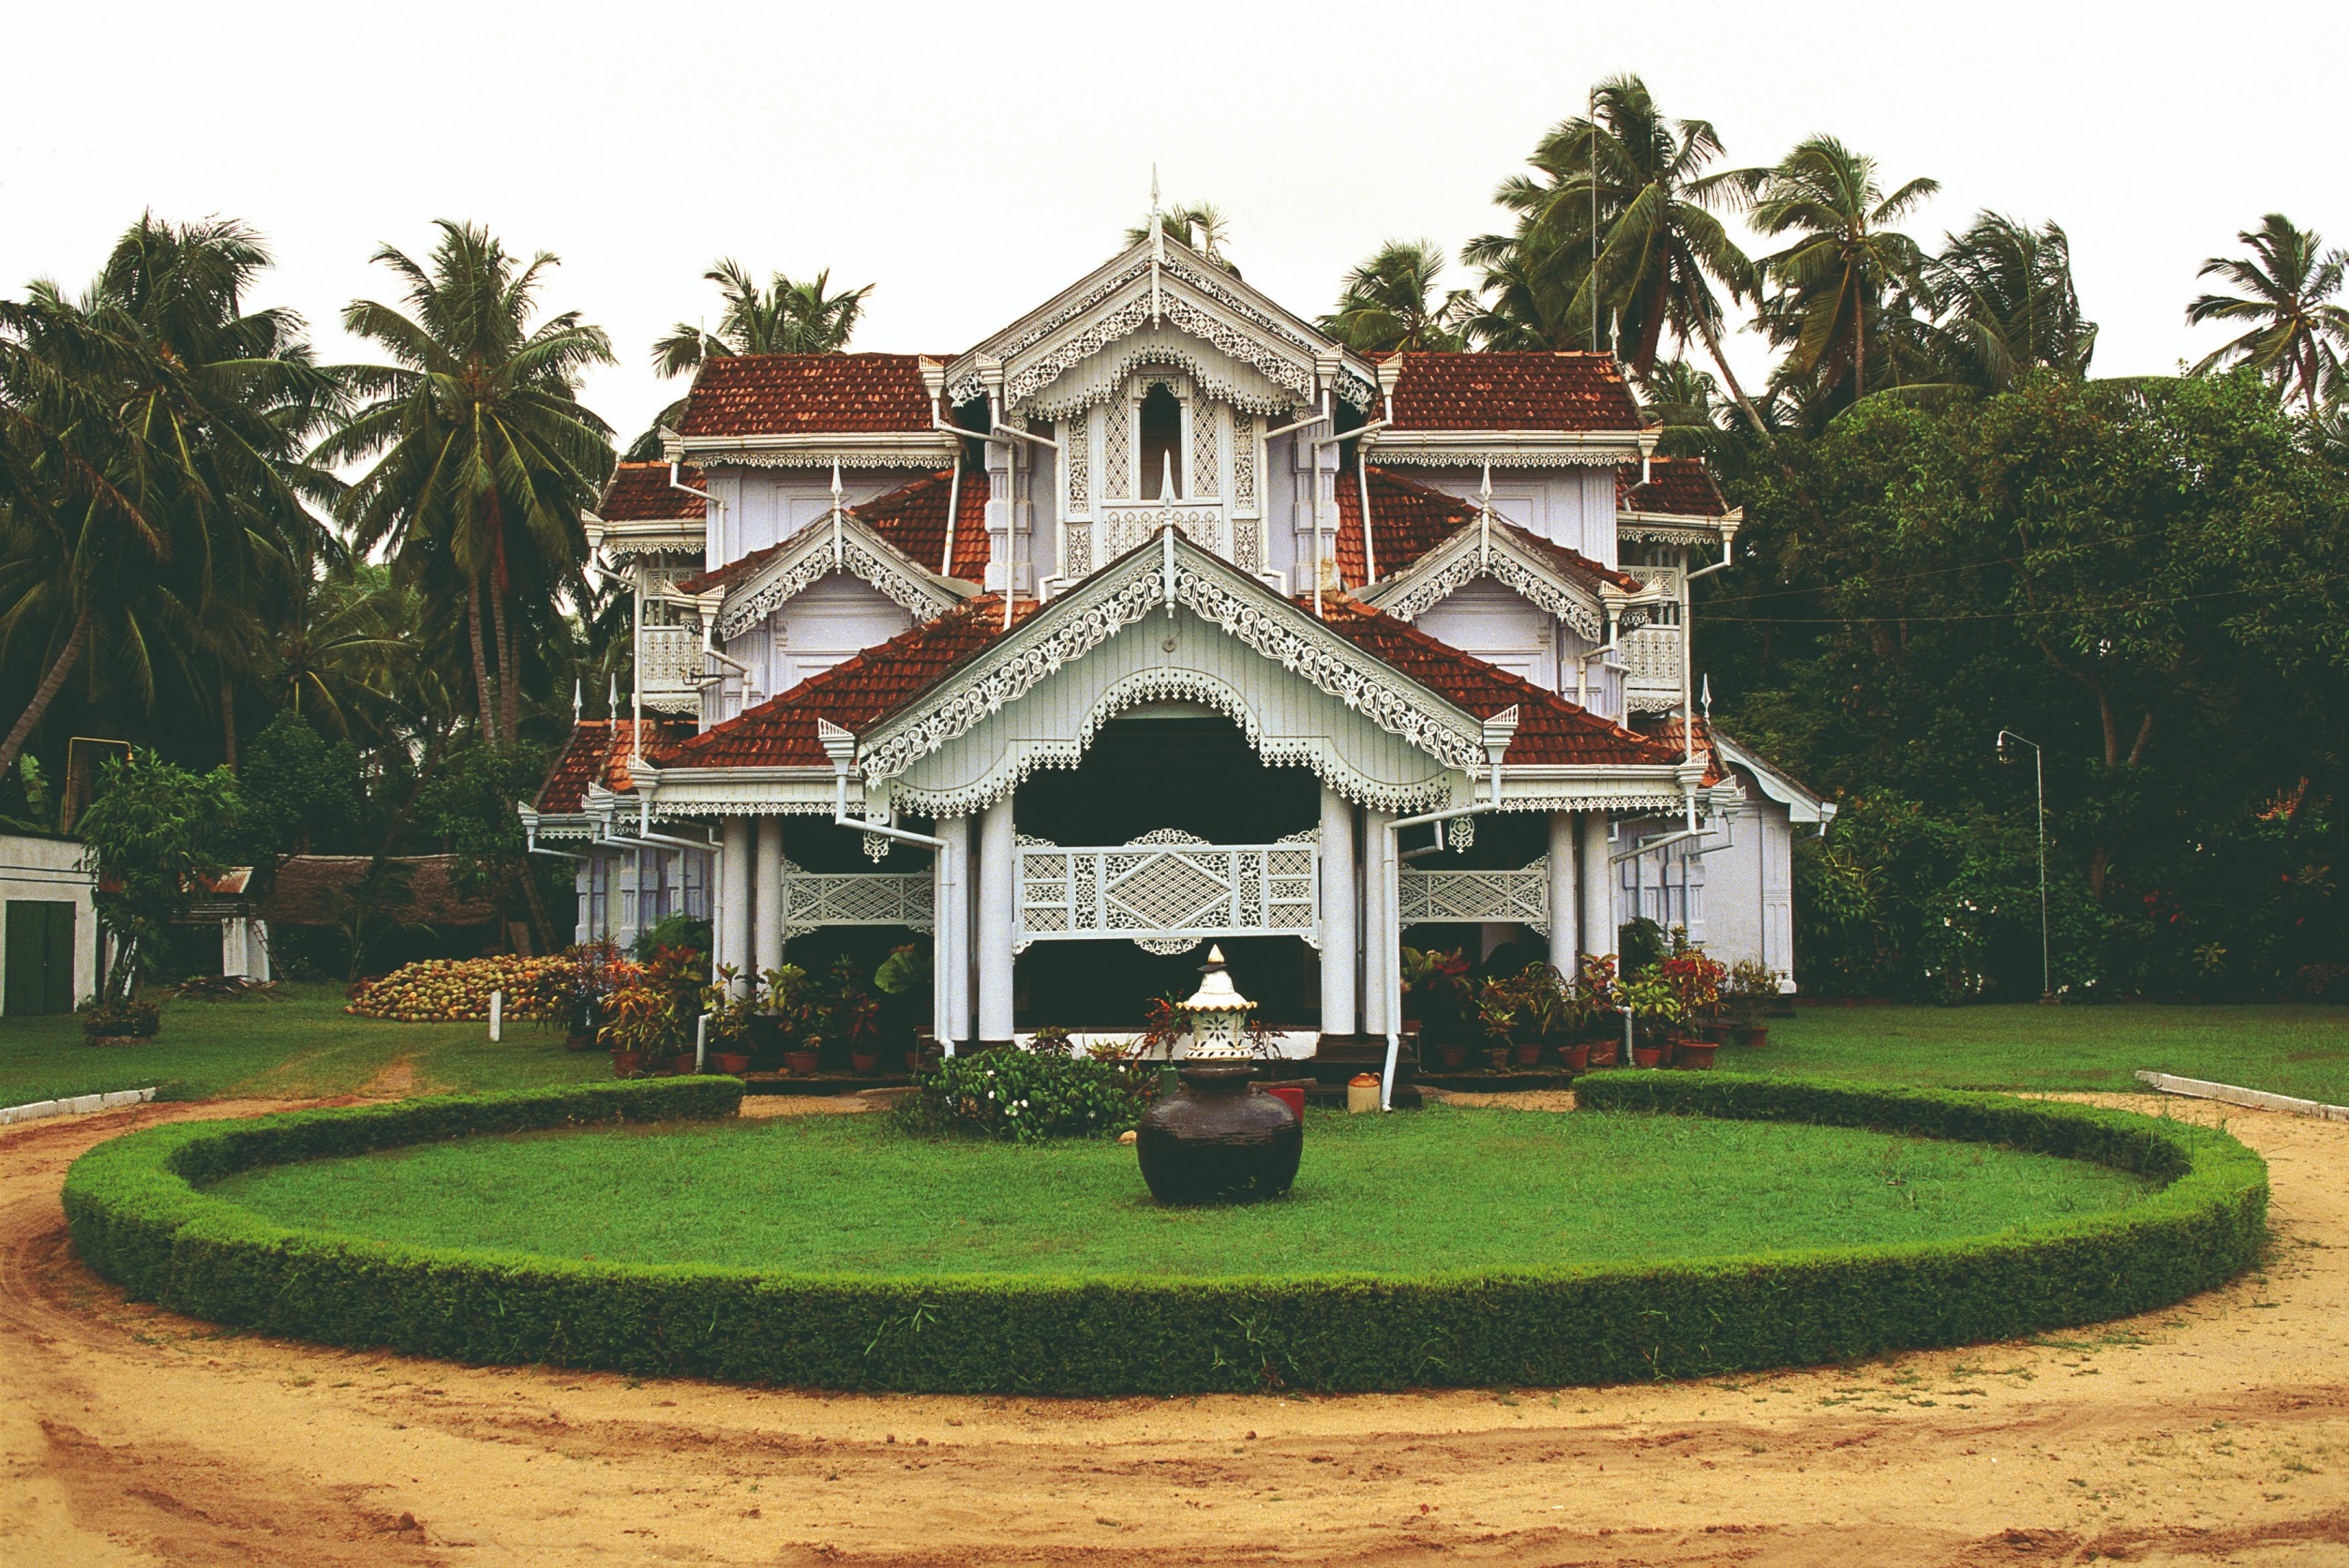 Maison coloniale, Colombo.